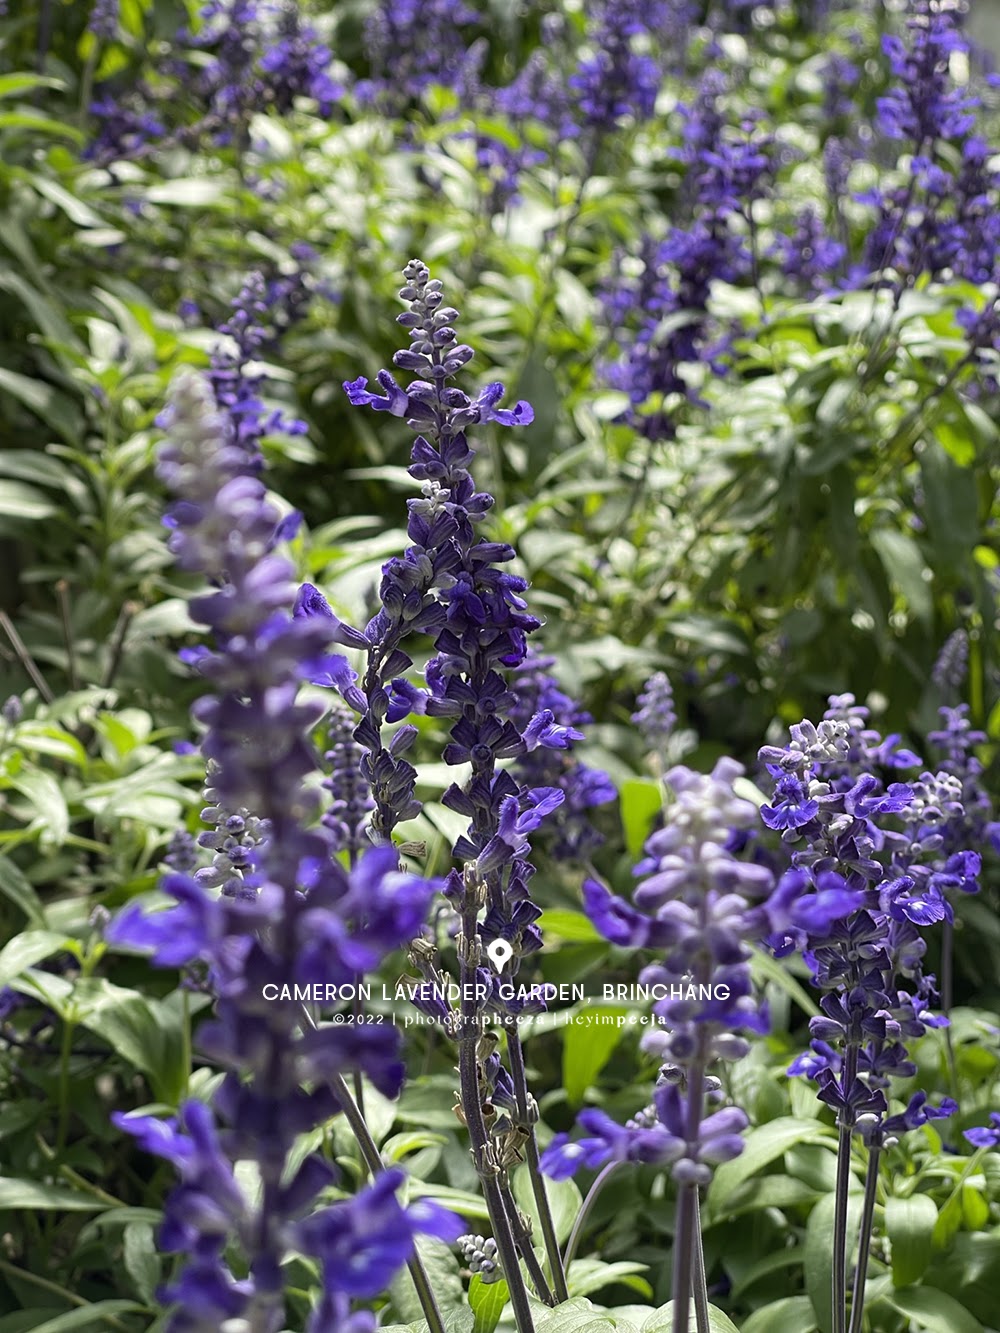 cameron lavender garden